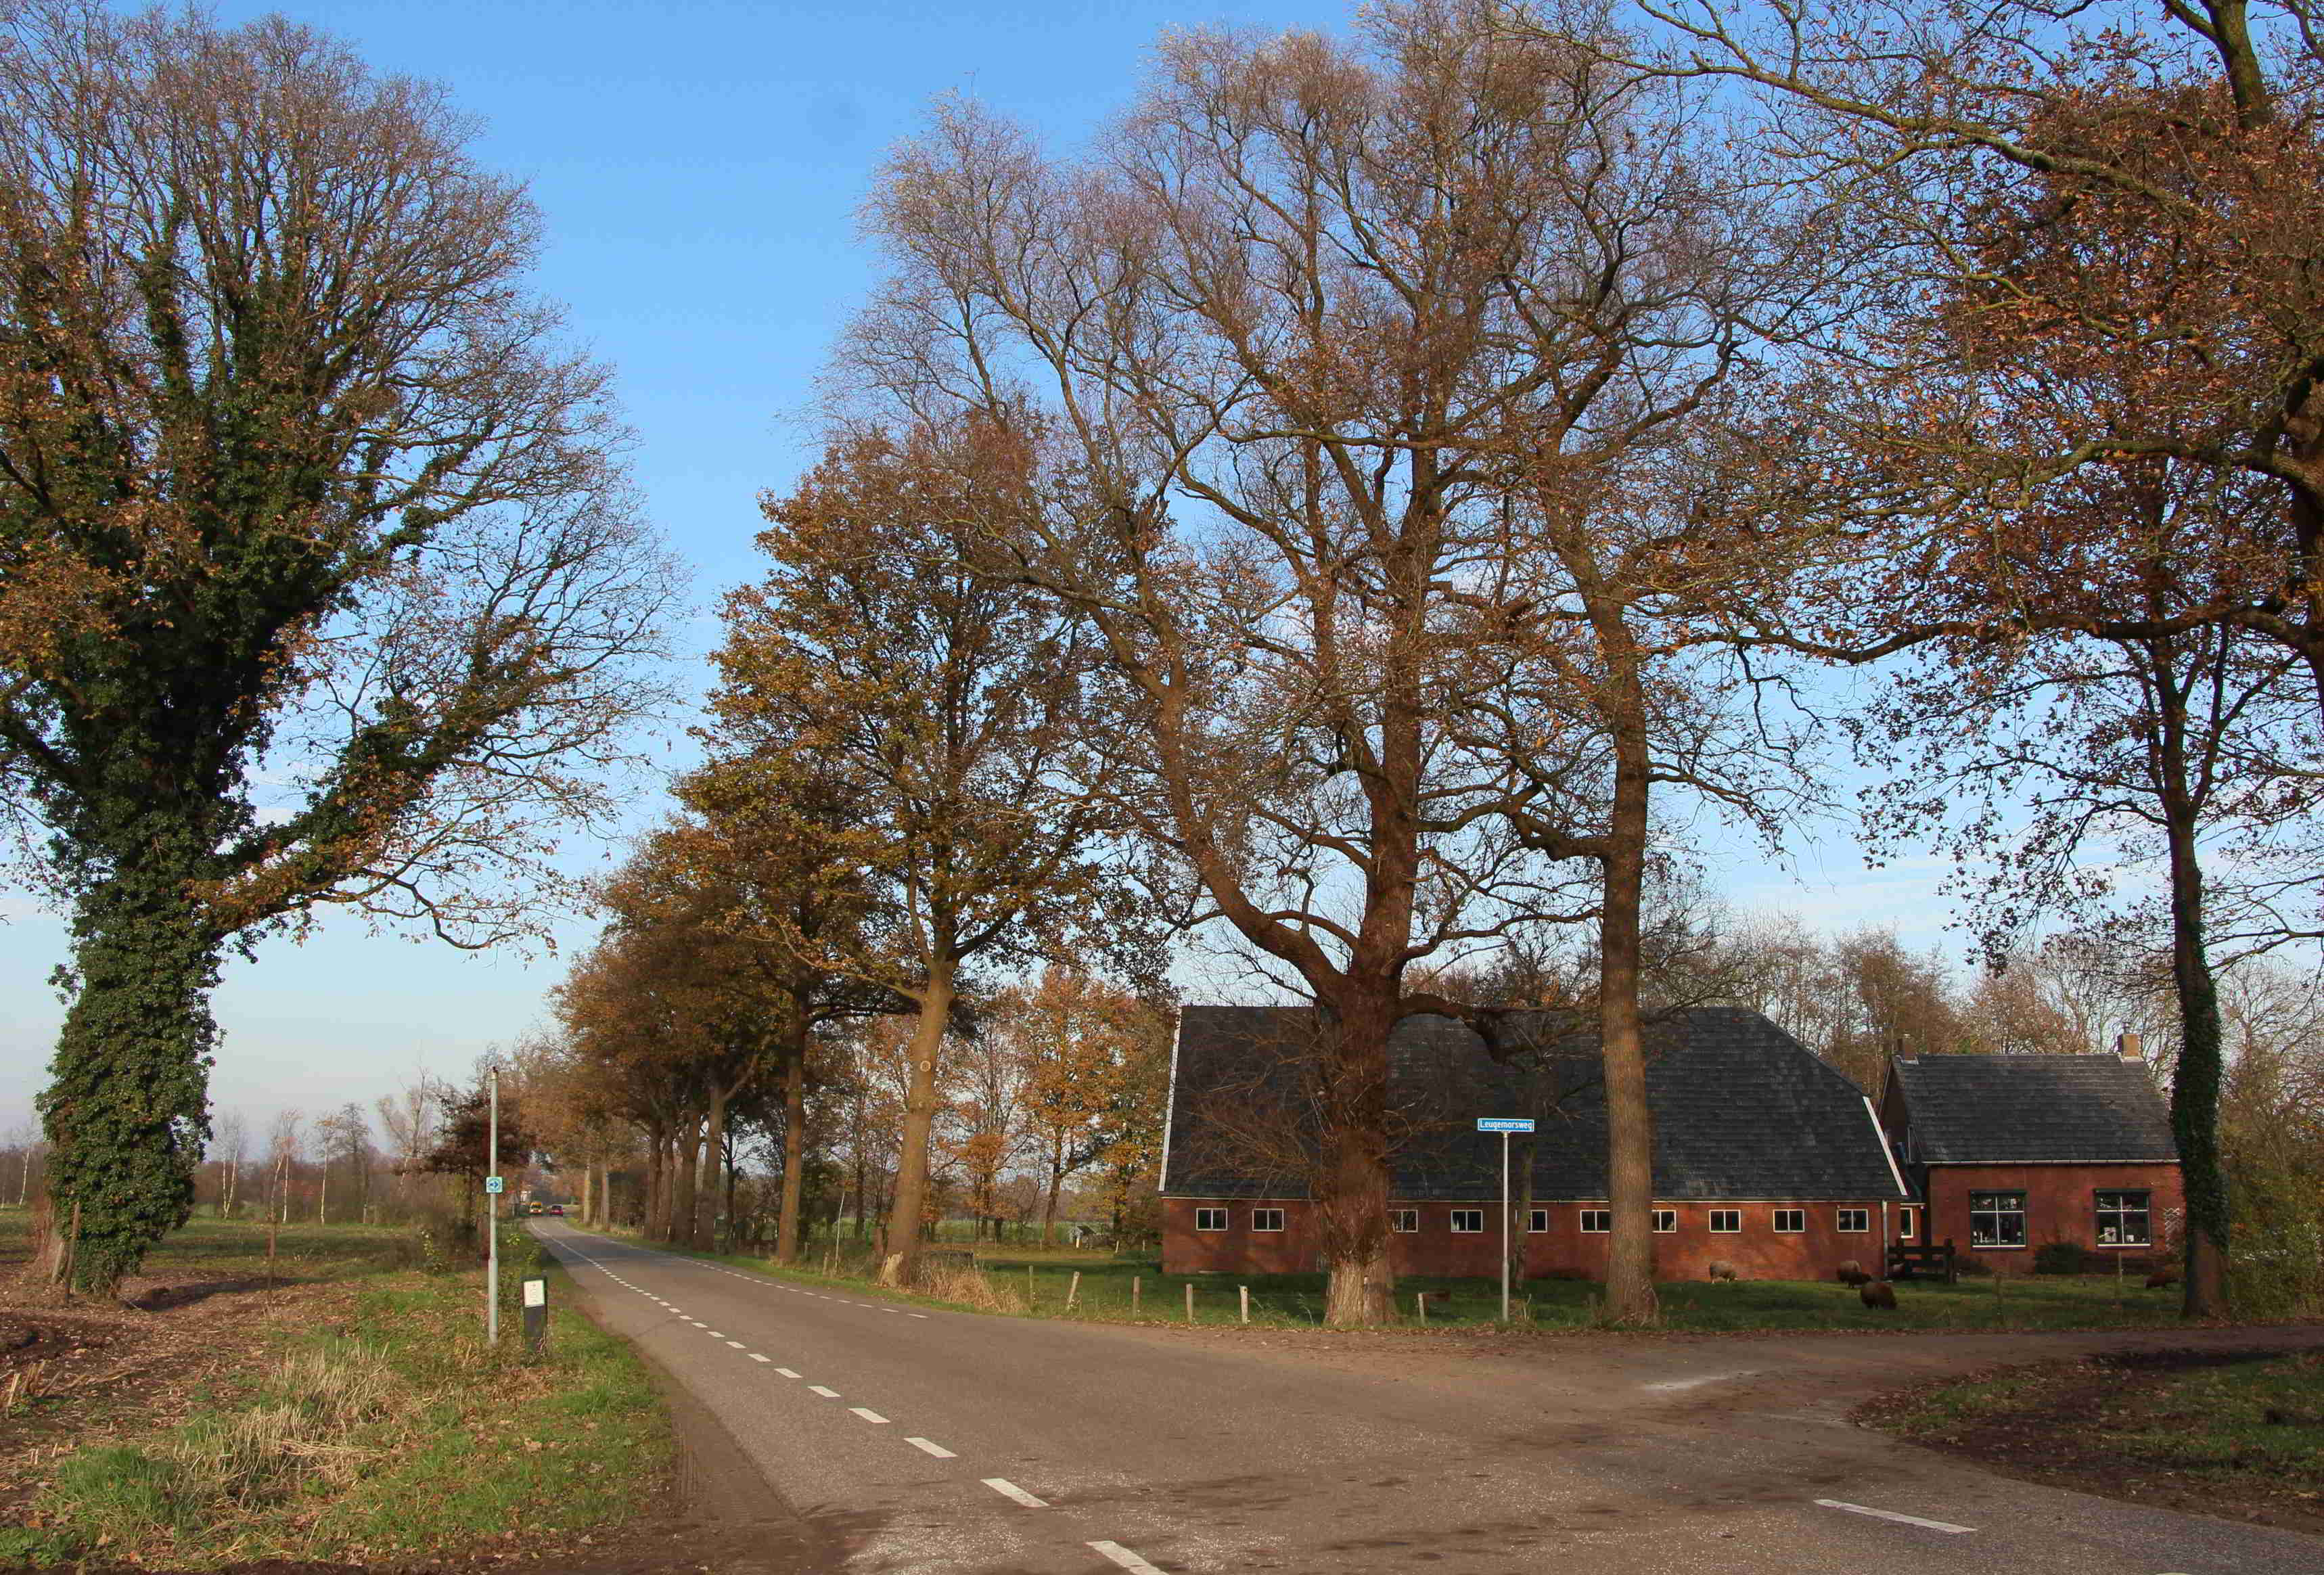 Het erve Biezebeek in Olden Eibergen op de hoek Stokkersweg-Leugemorsweg. De Stokkersweg (voorgrond) is ca. 1960 door de tuin aangelegd. De gracht was tot ca. 1980 ook aan de westkant (r) nog zichtbaar. Diagonaal onder de wegsplitsing loopt een oud beekdal. (foto auteur)